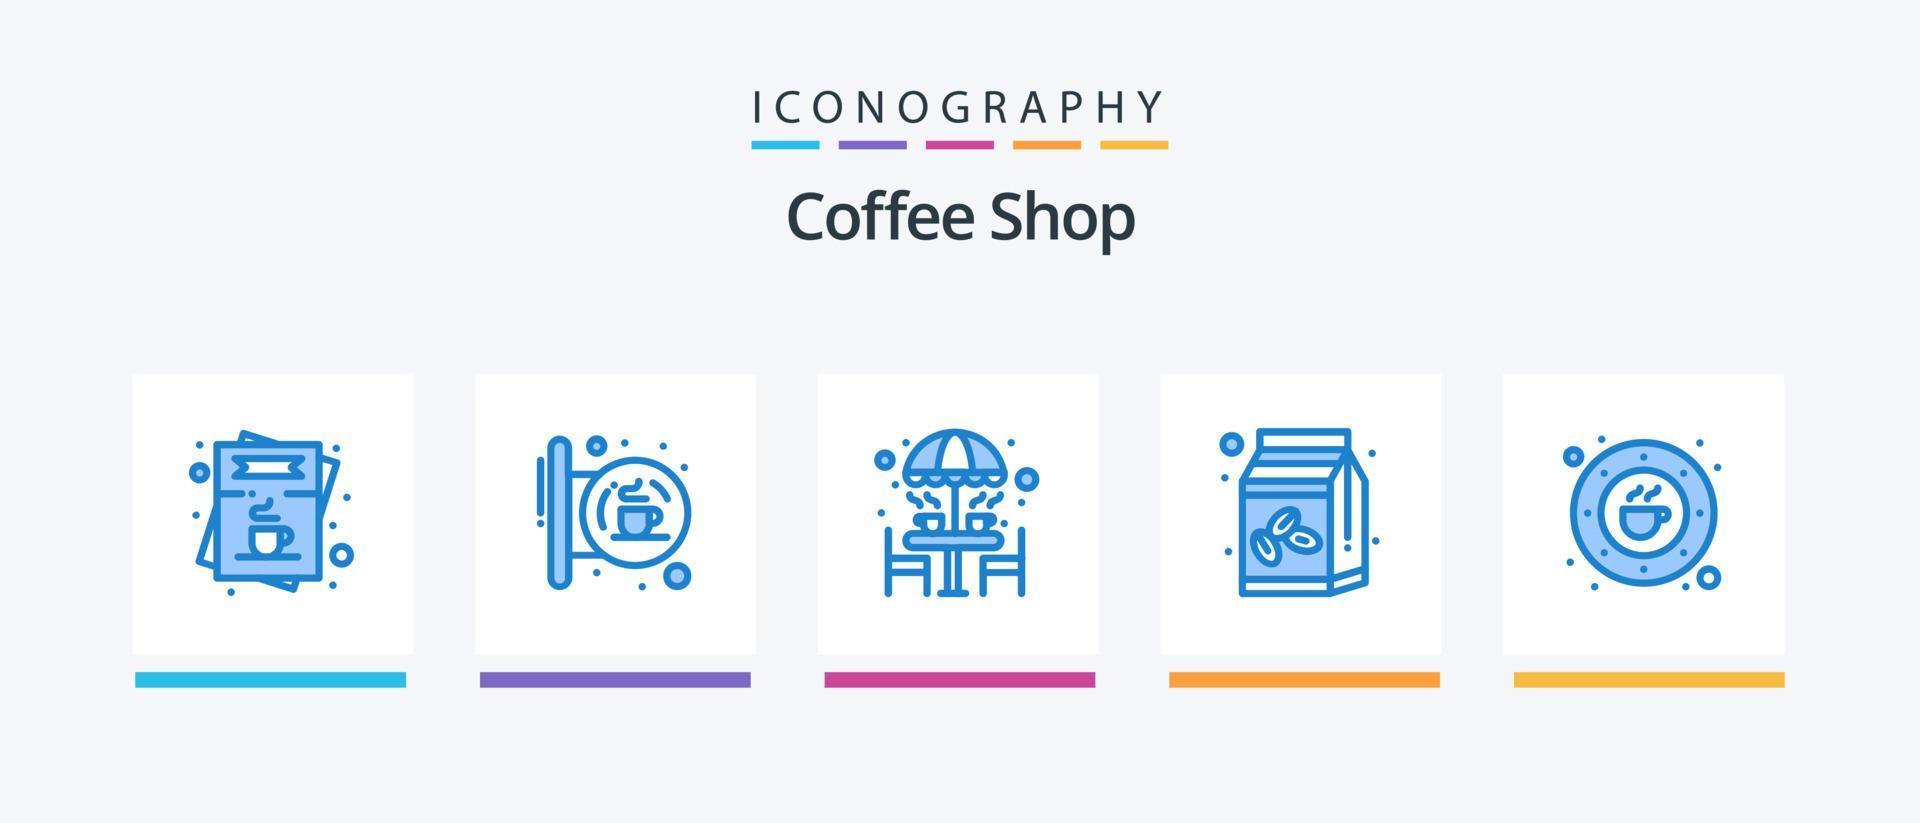 kaffe affär blå 5 ikon packa Inklusive socker skål. kaffe. affär. paraply. möbel. kreativ ikoner design vektor